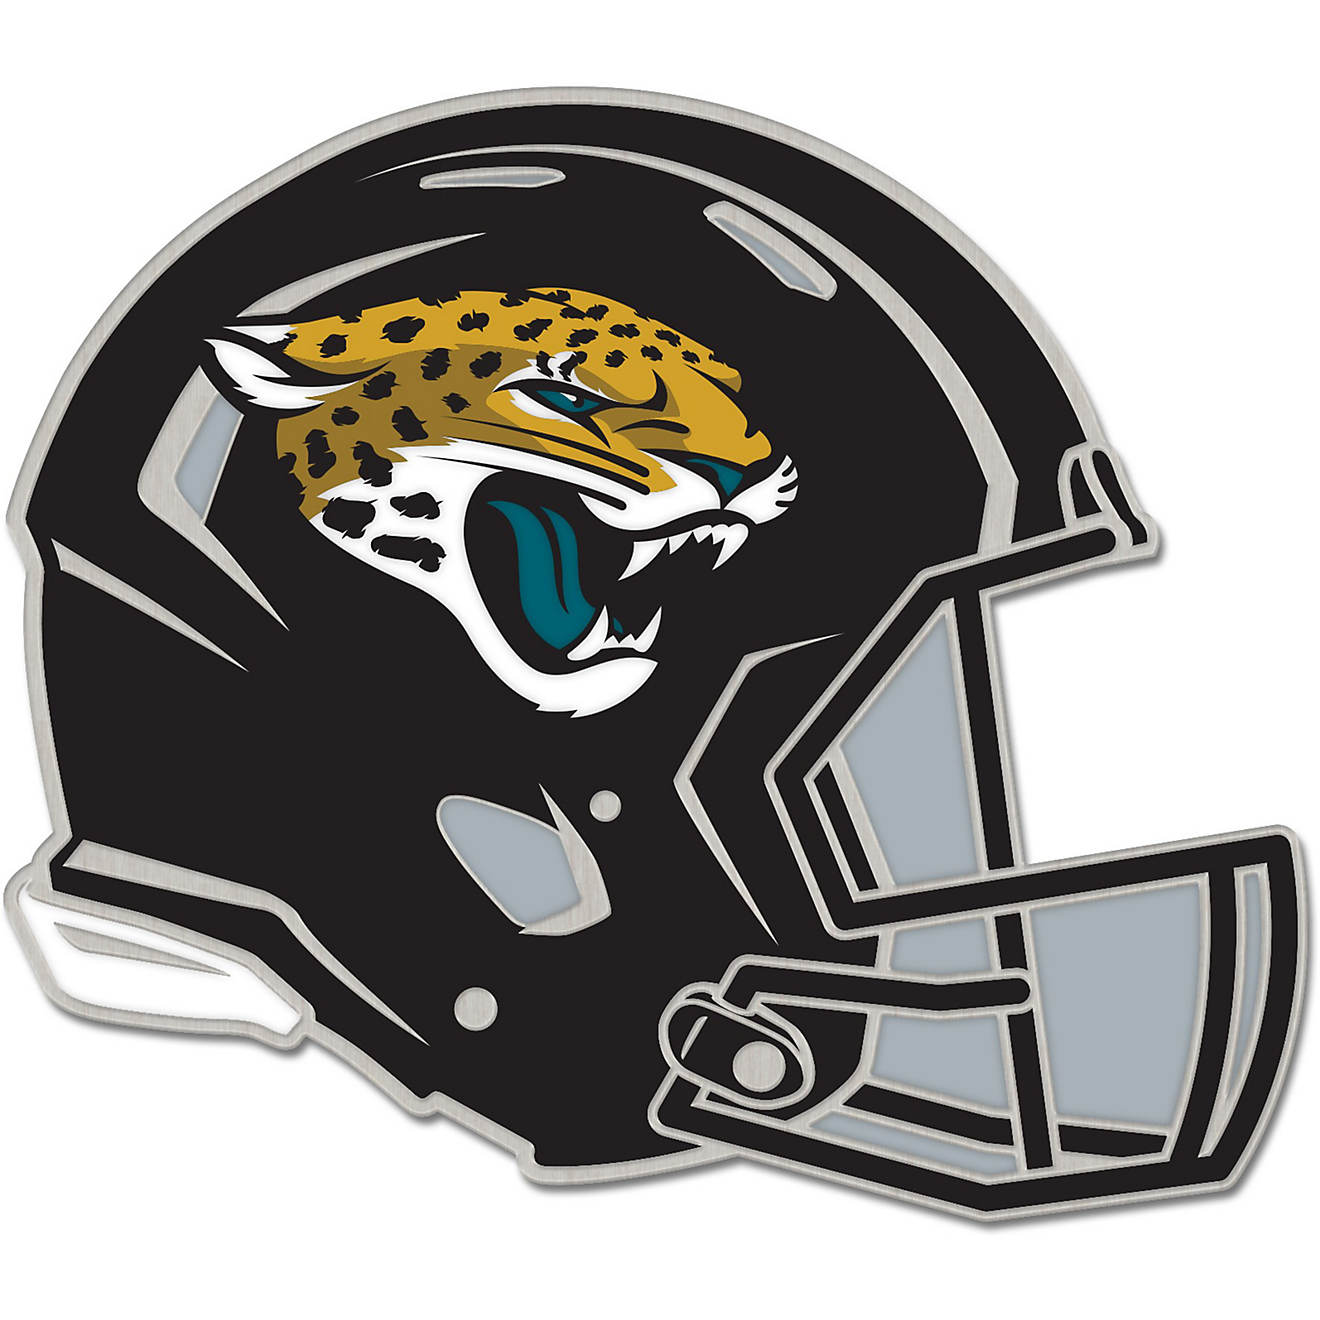 jacksonville jaguars youth helmet